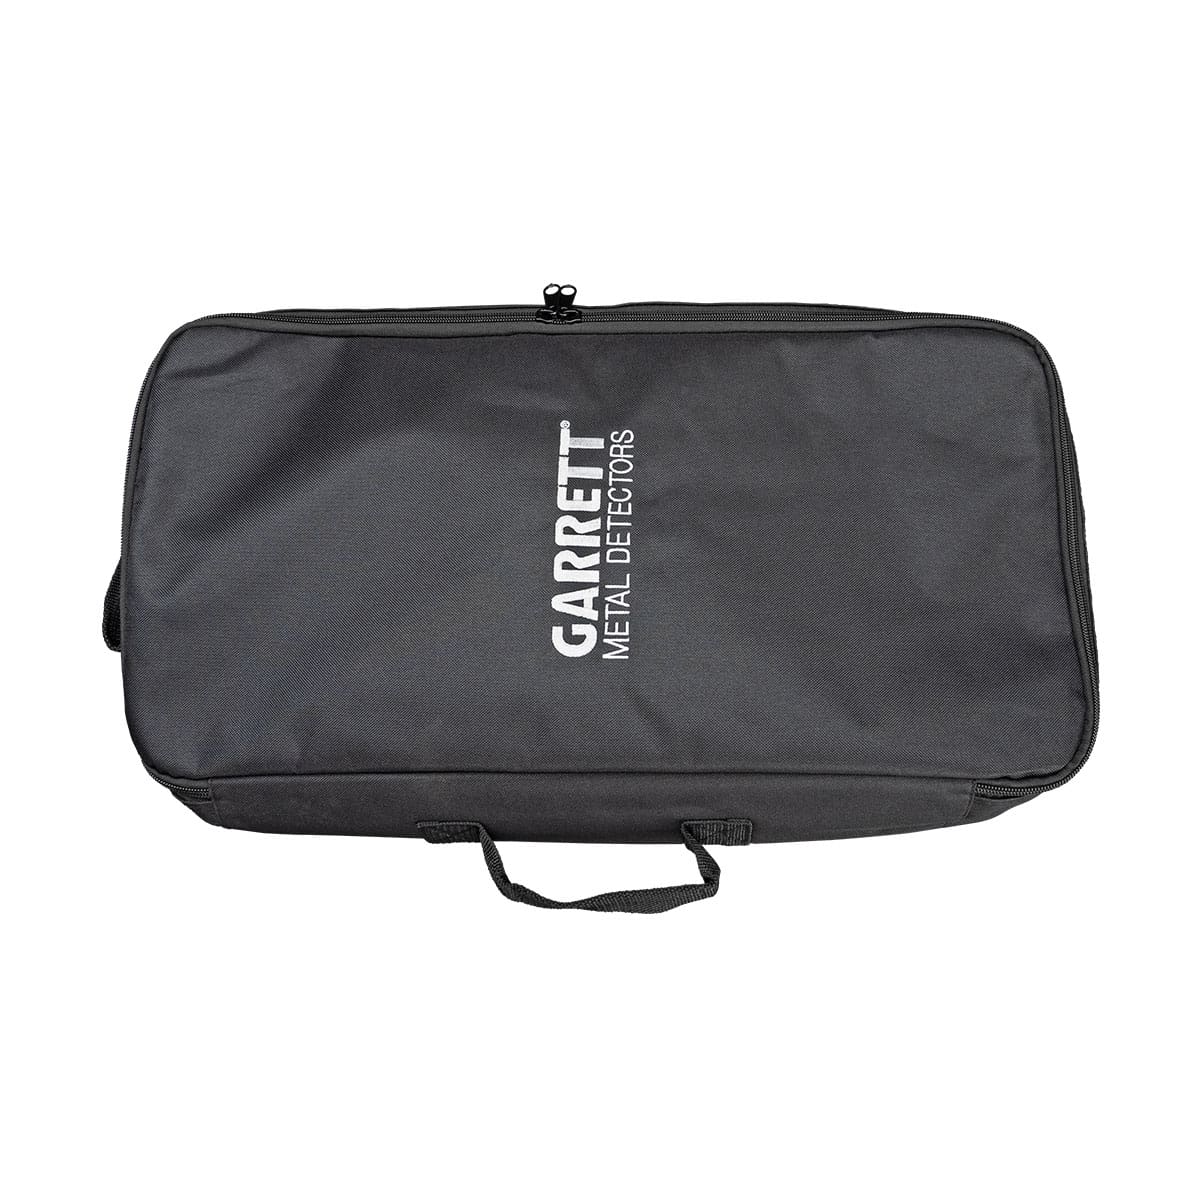 Garrett Deluxe Soft Travel Carry Case